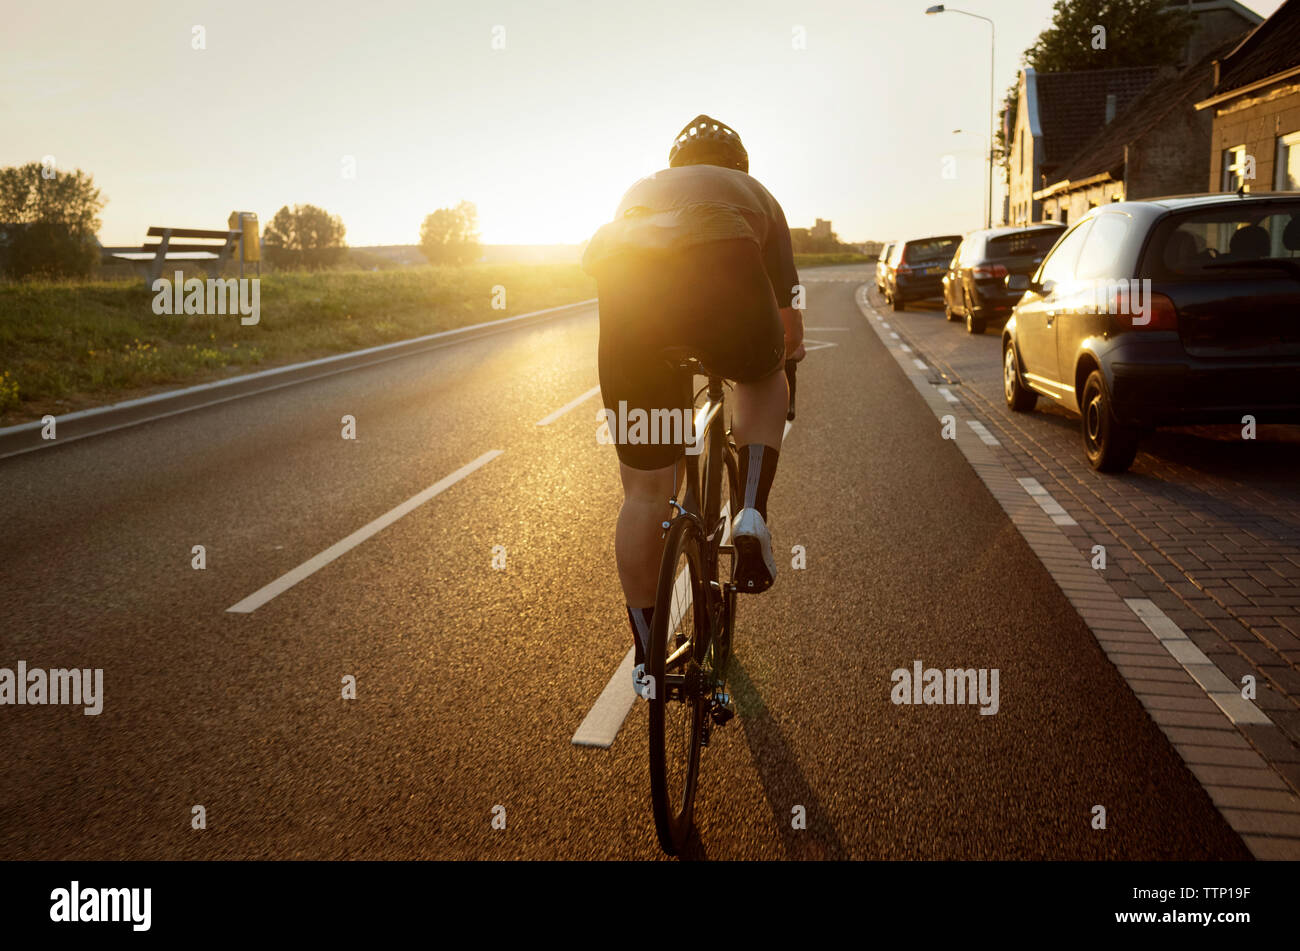 Vue arrière de l'homme à vélo sur route par des voitures en stationnement against sky Banque D'Images